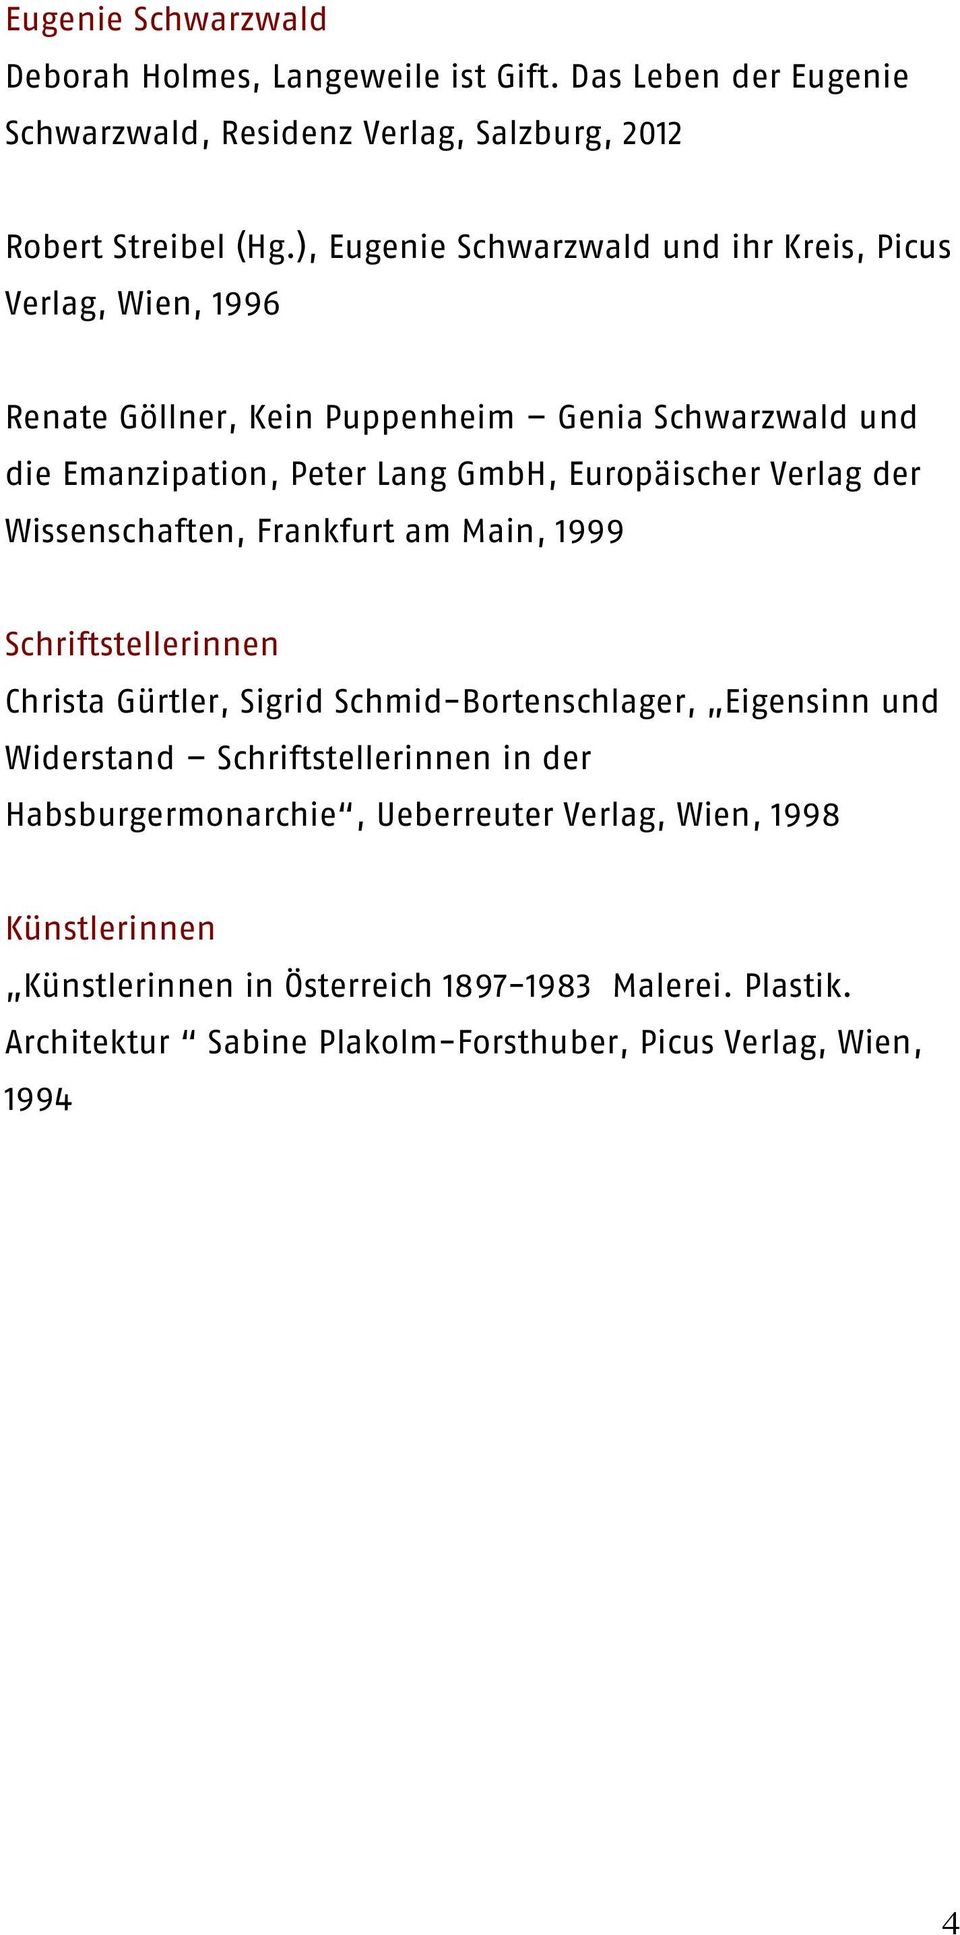 Verlag der Wissenschaften, Frankfurt am Main, 1999 Schriftstellerinnen Christa Gürtler, Sigrid Schmid-Bortenschlager, Eigensinn und Widerstand Schriftstellerinnen in